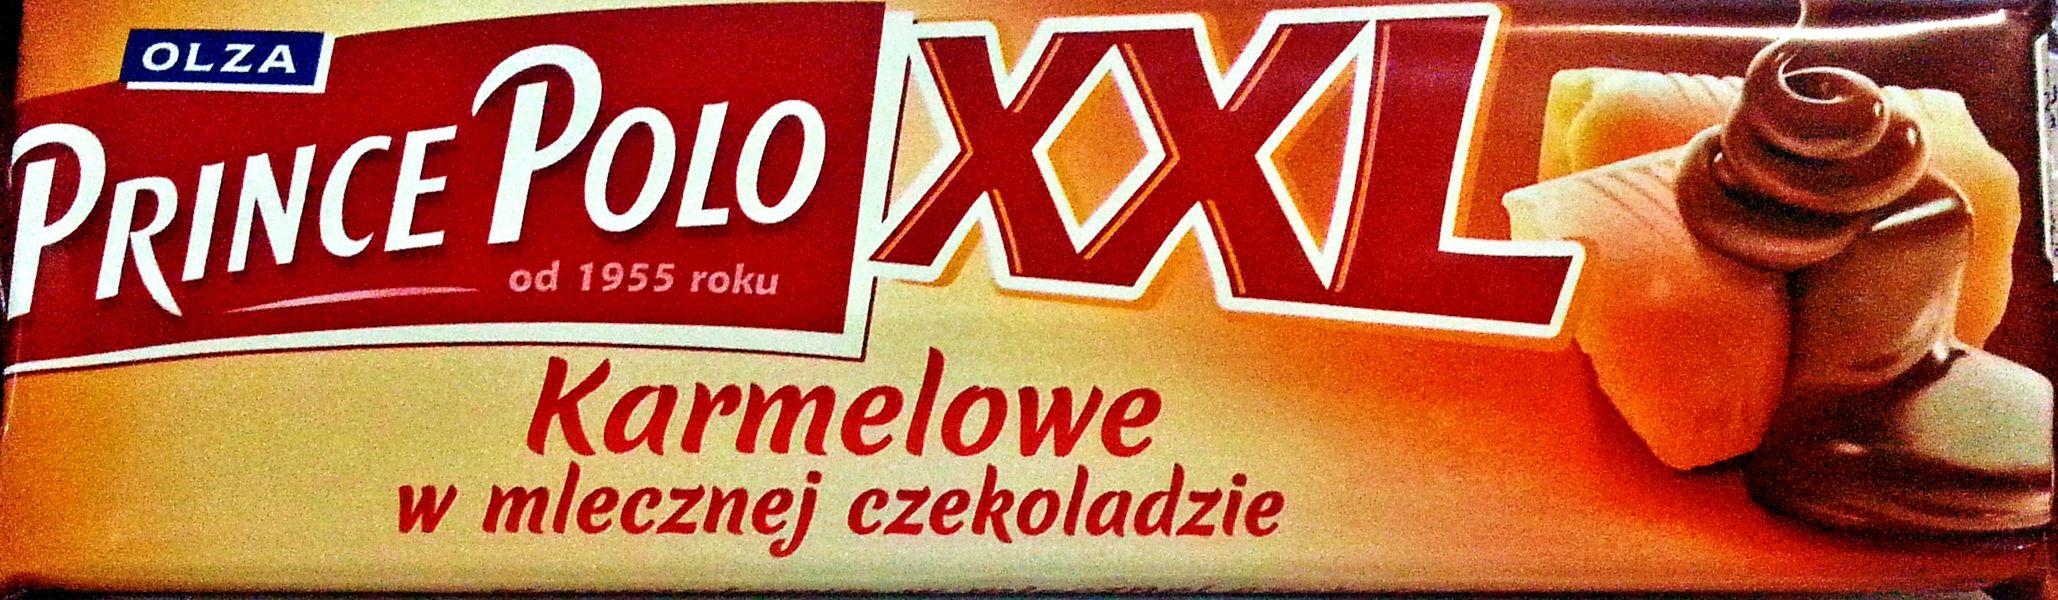 Prince Polo XXL wafelek  karmelowy w mlecznej czekoladzie